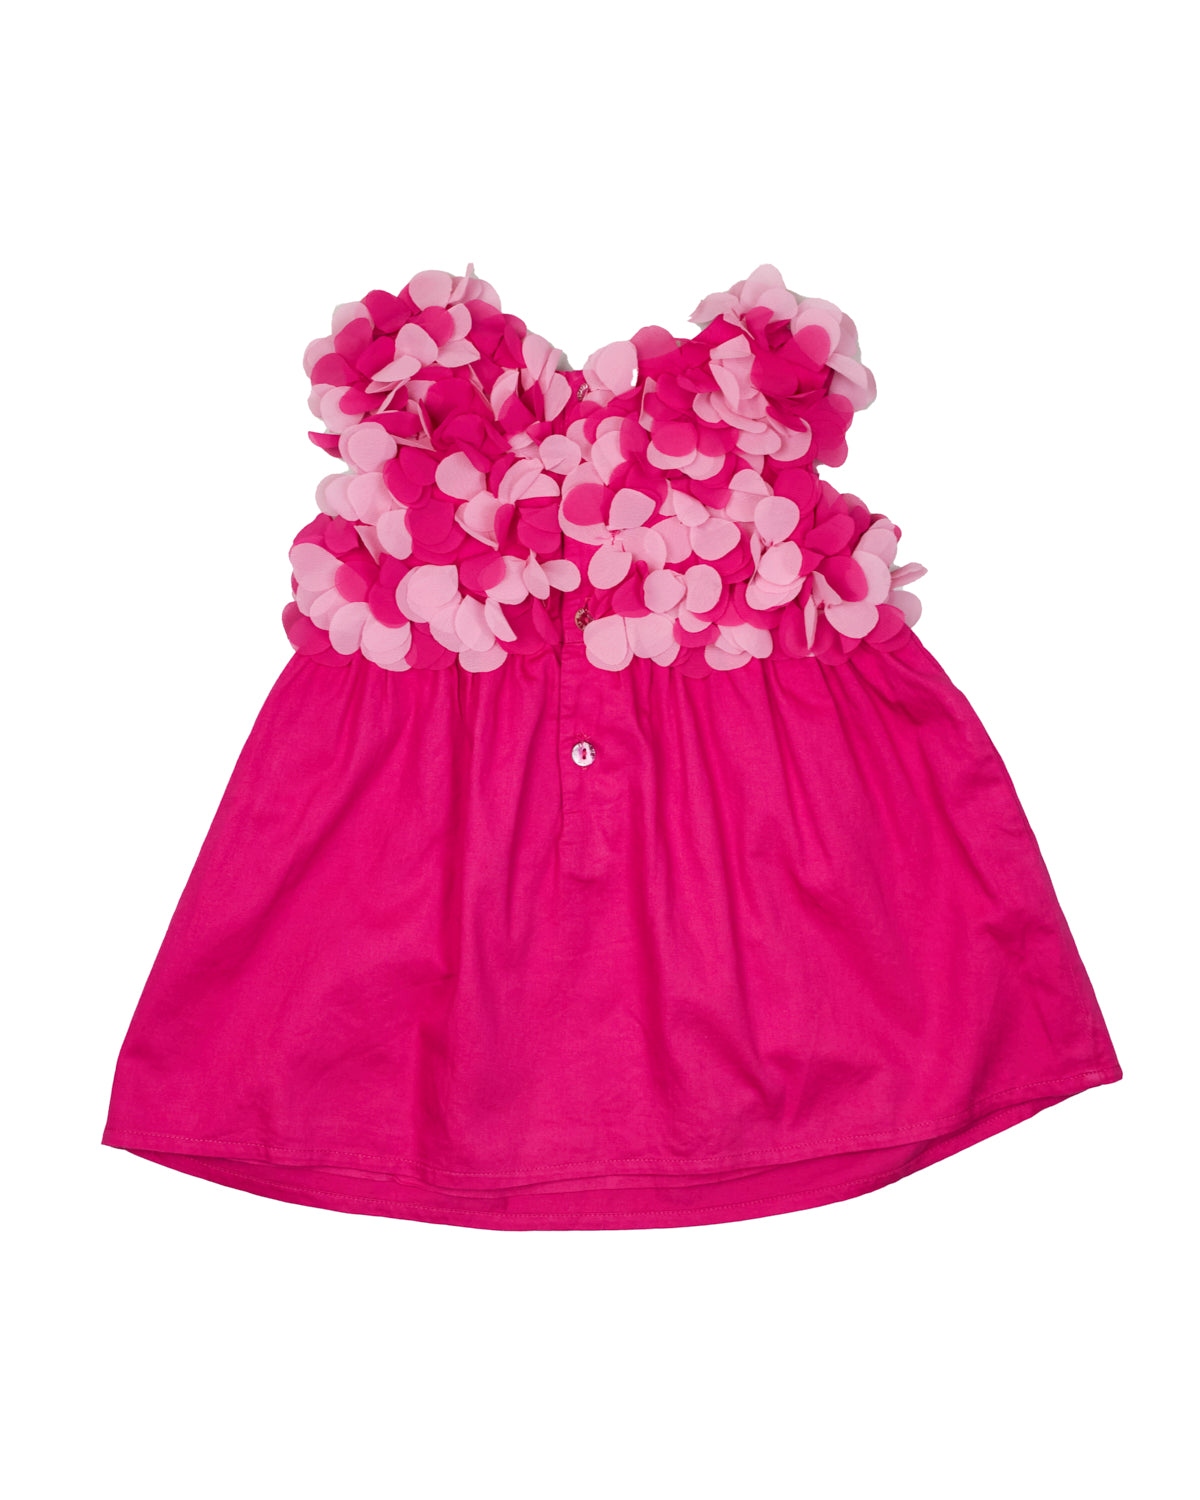 Agatha Ruiz De La Prada Pink Dress